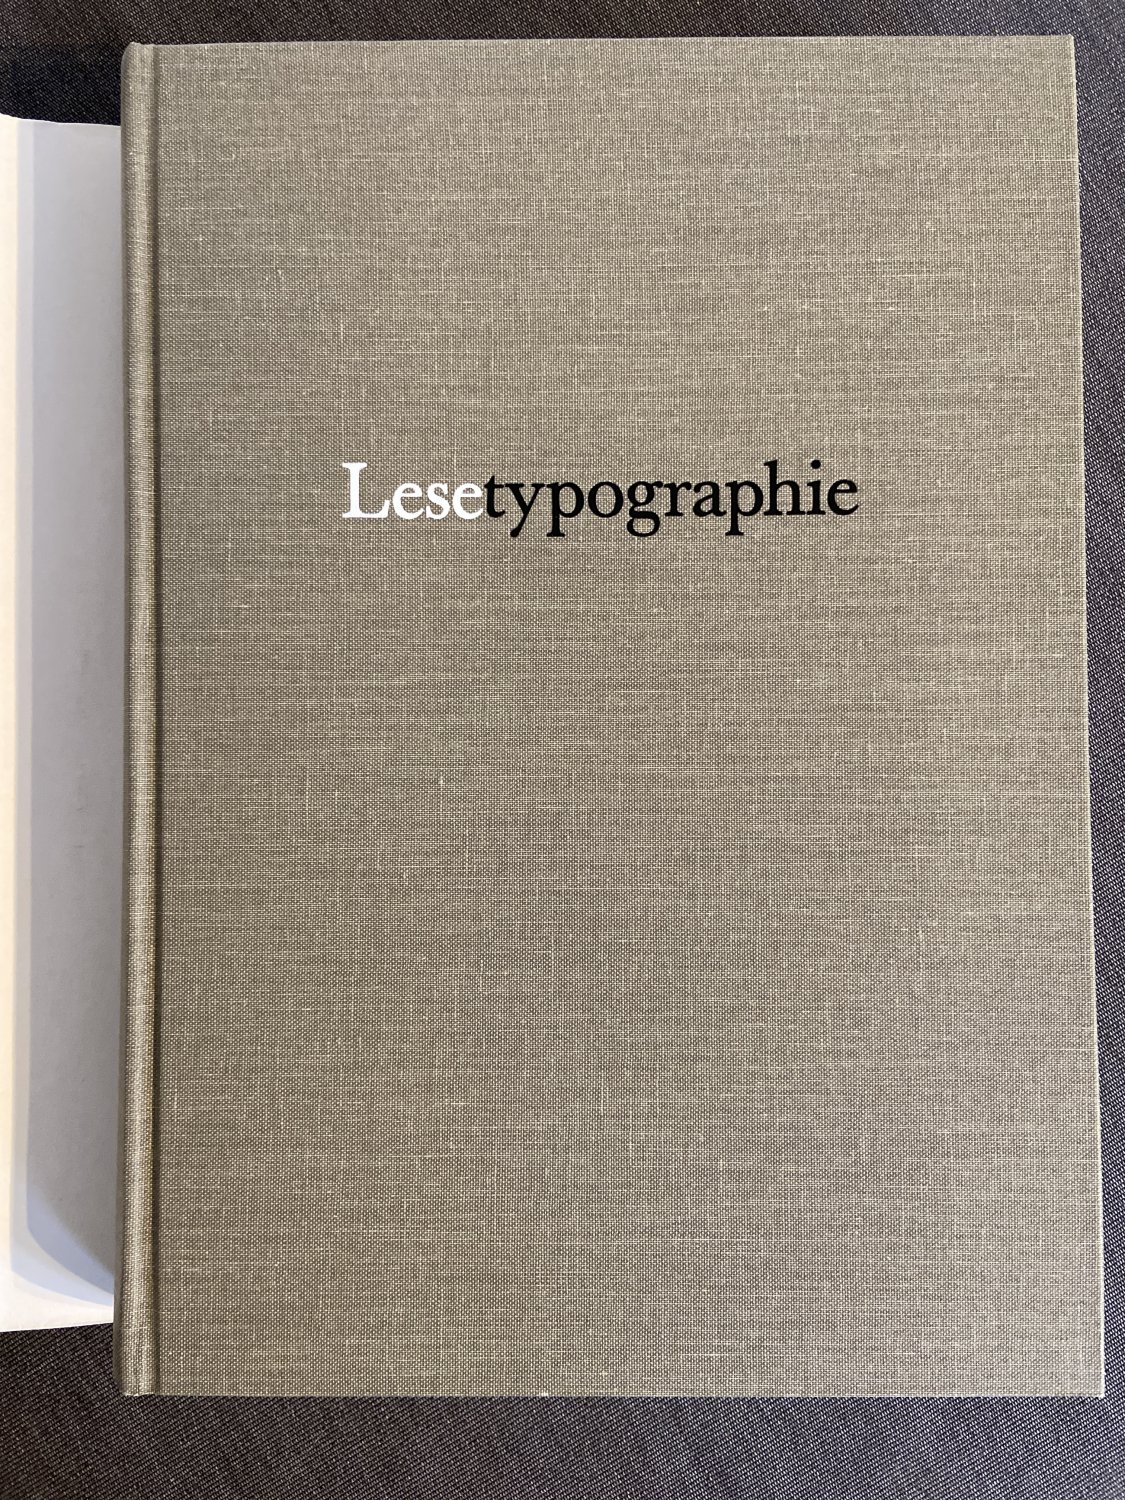 Lesetypografie